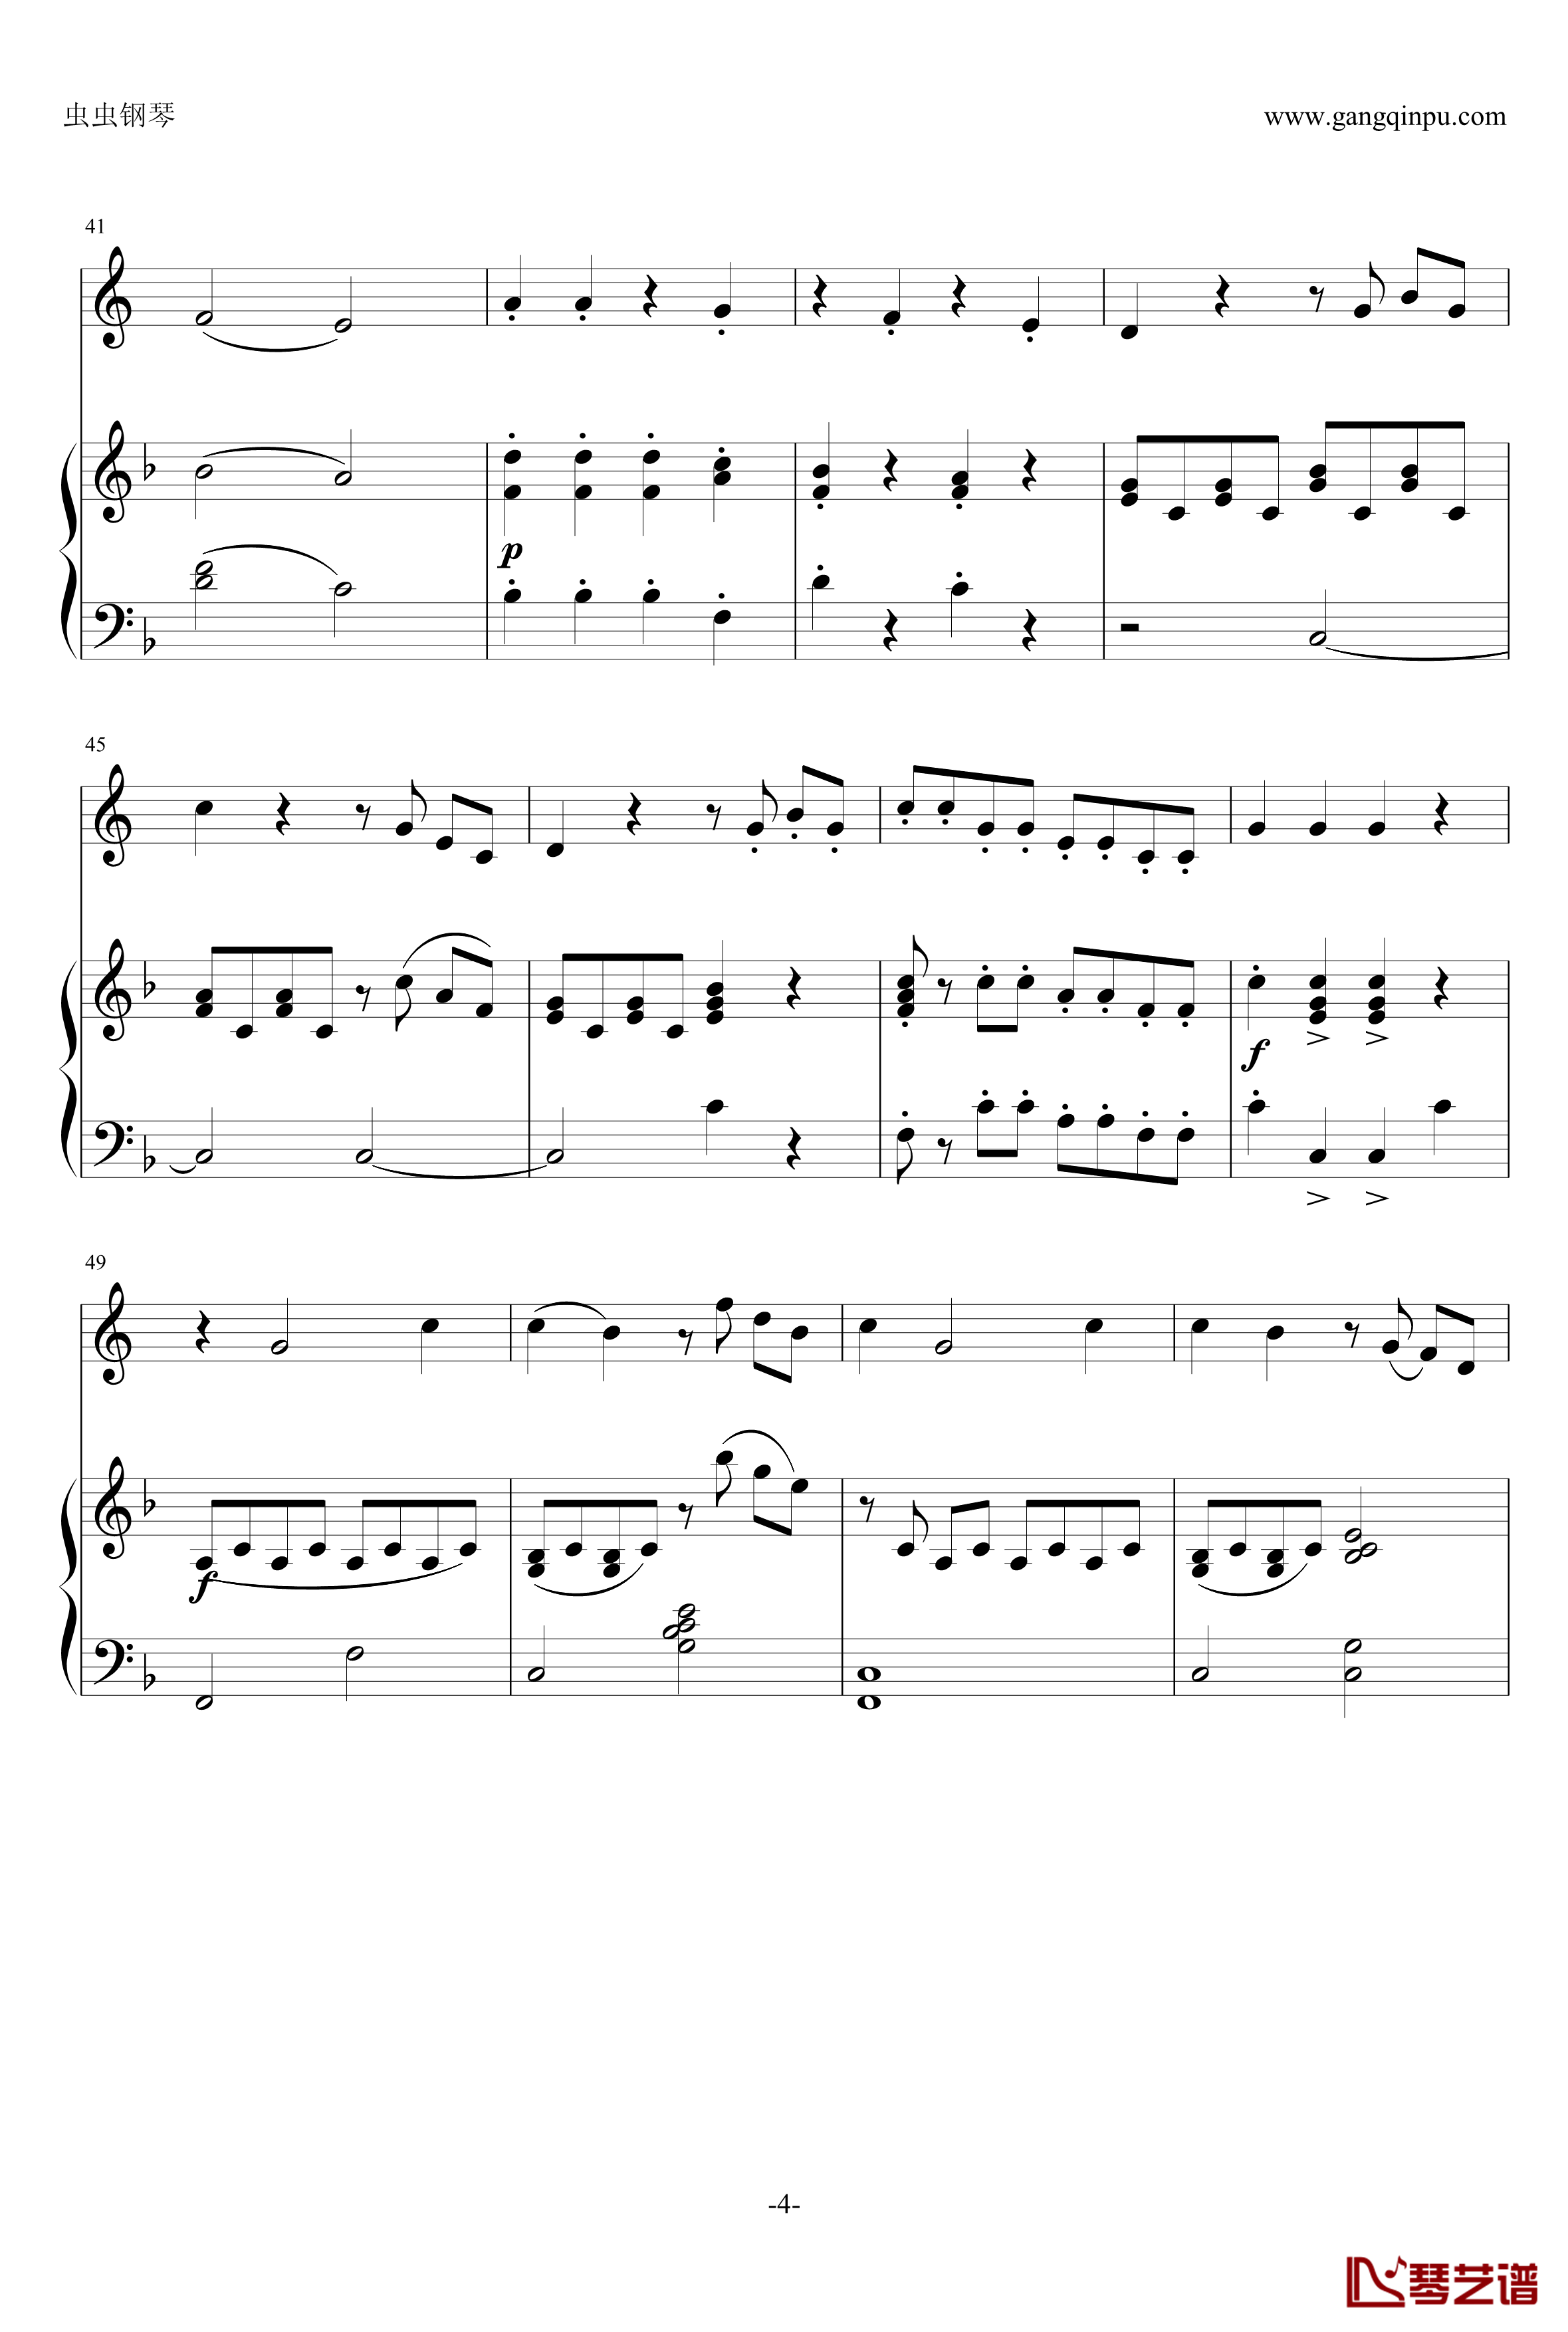 小奏鸣曲钢琴谱-莫扎特4